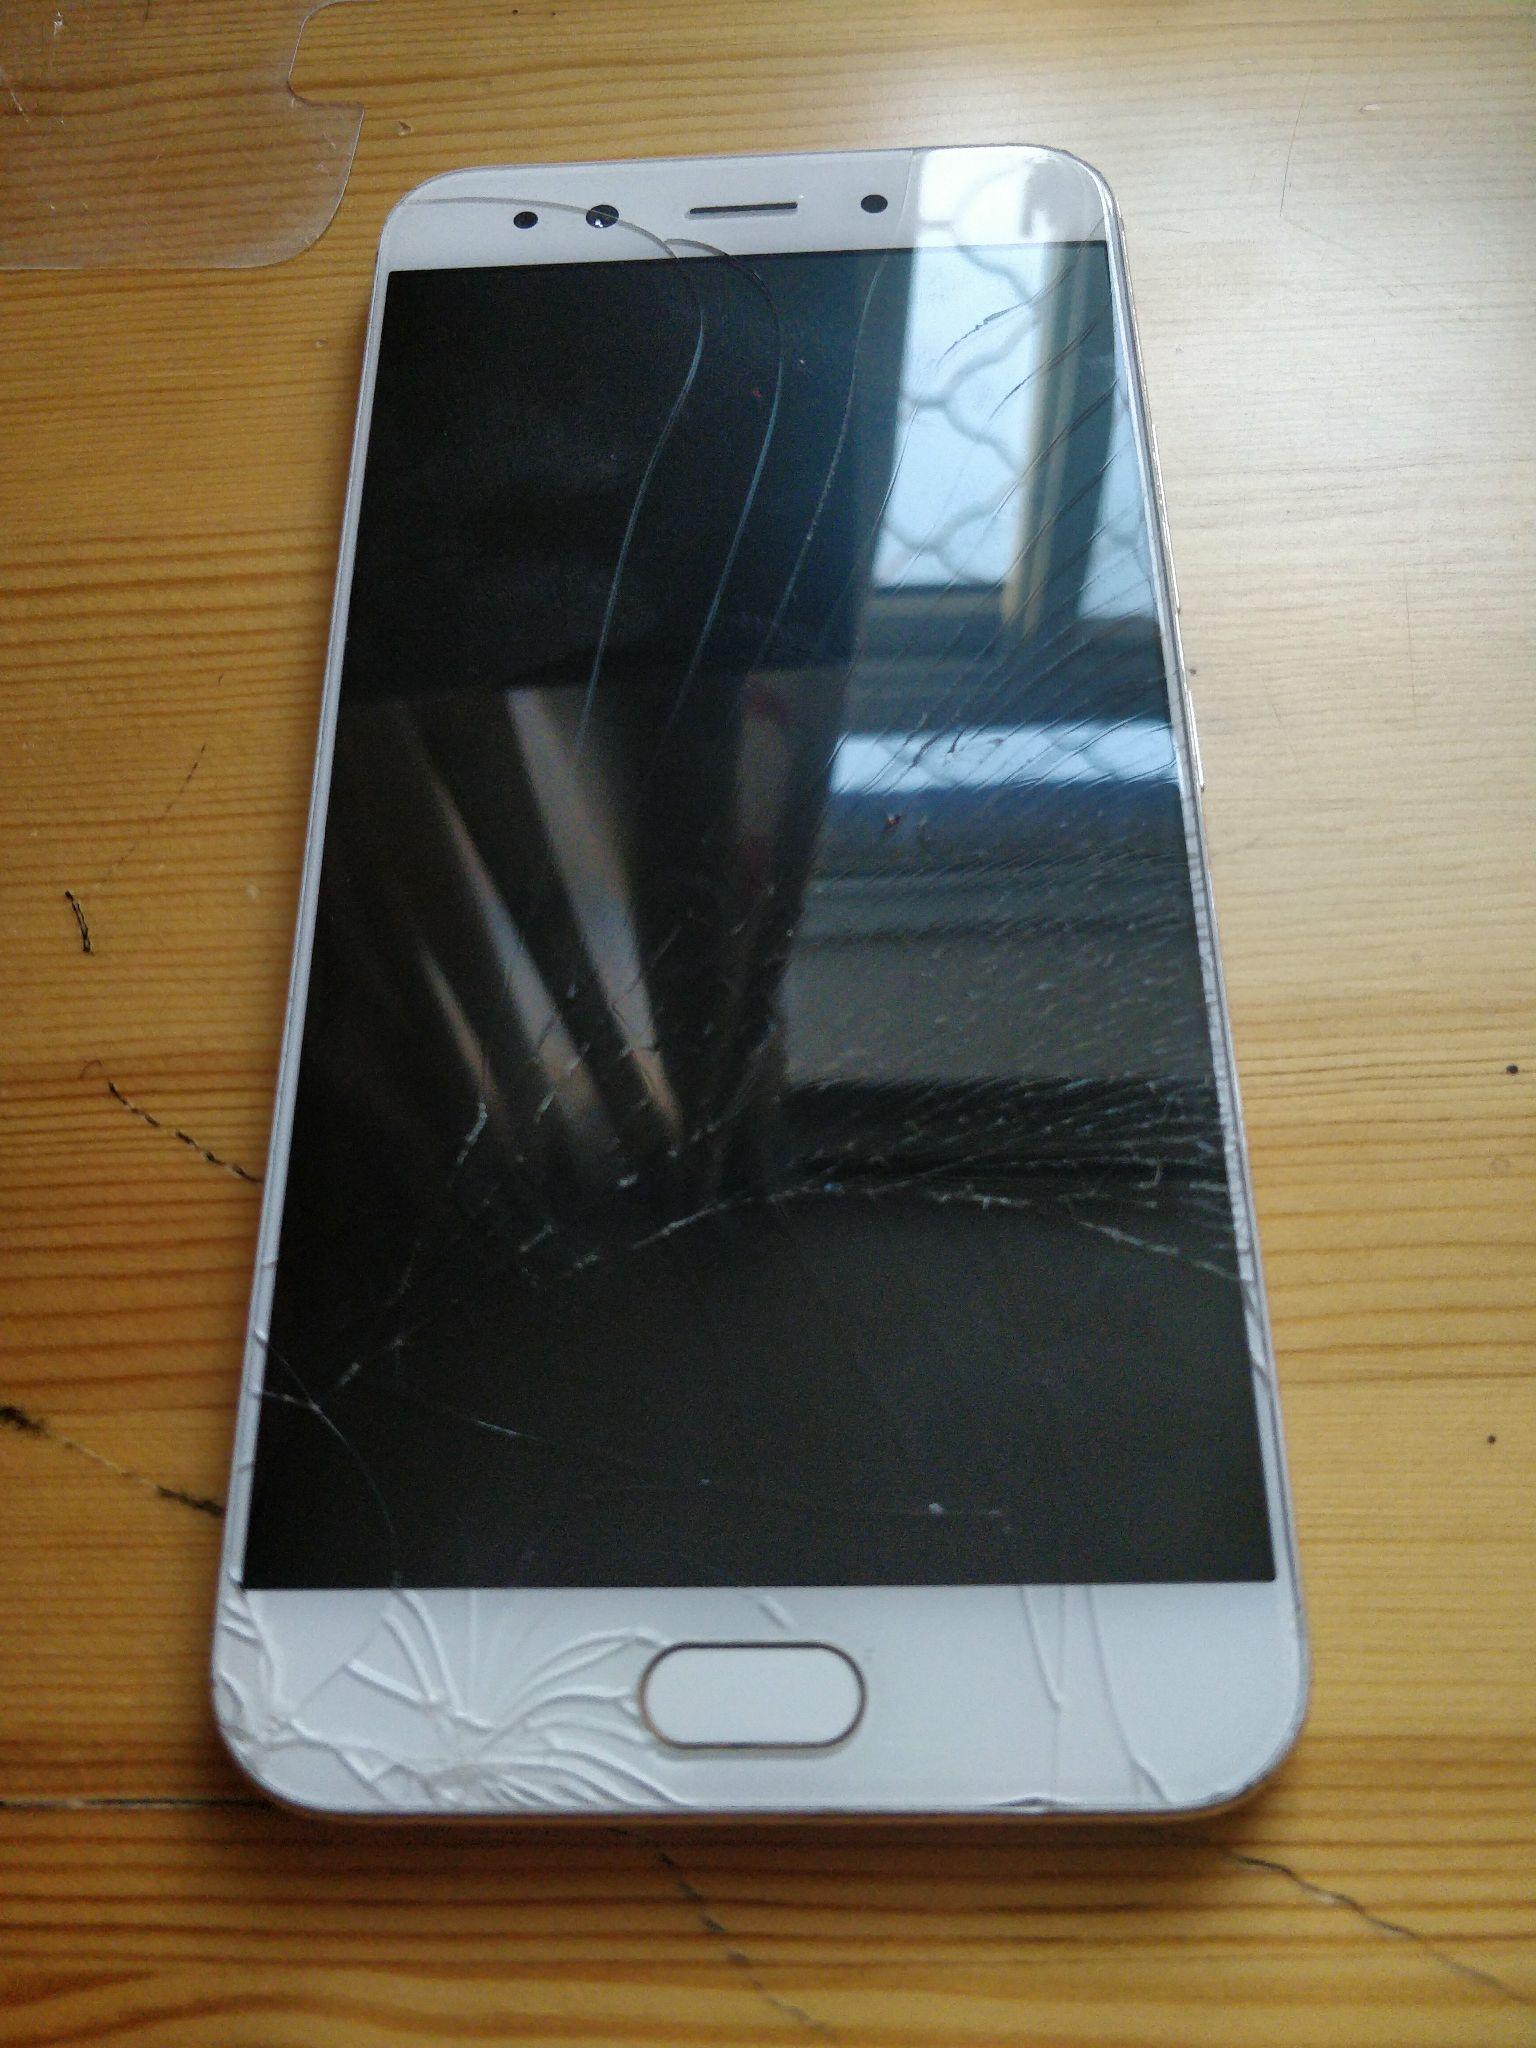 vivox9splusl手机外屏碎了,内屏没有,更换要多少钱? 